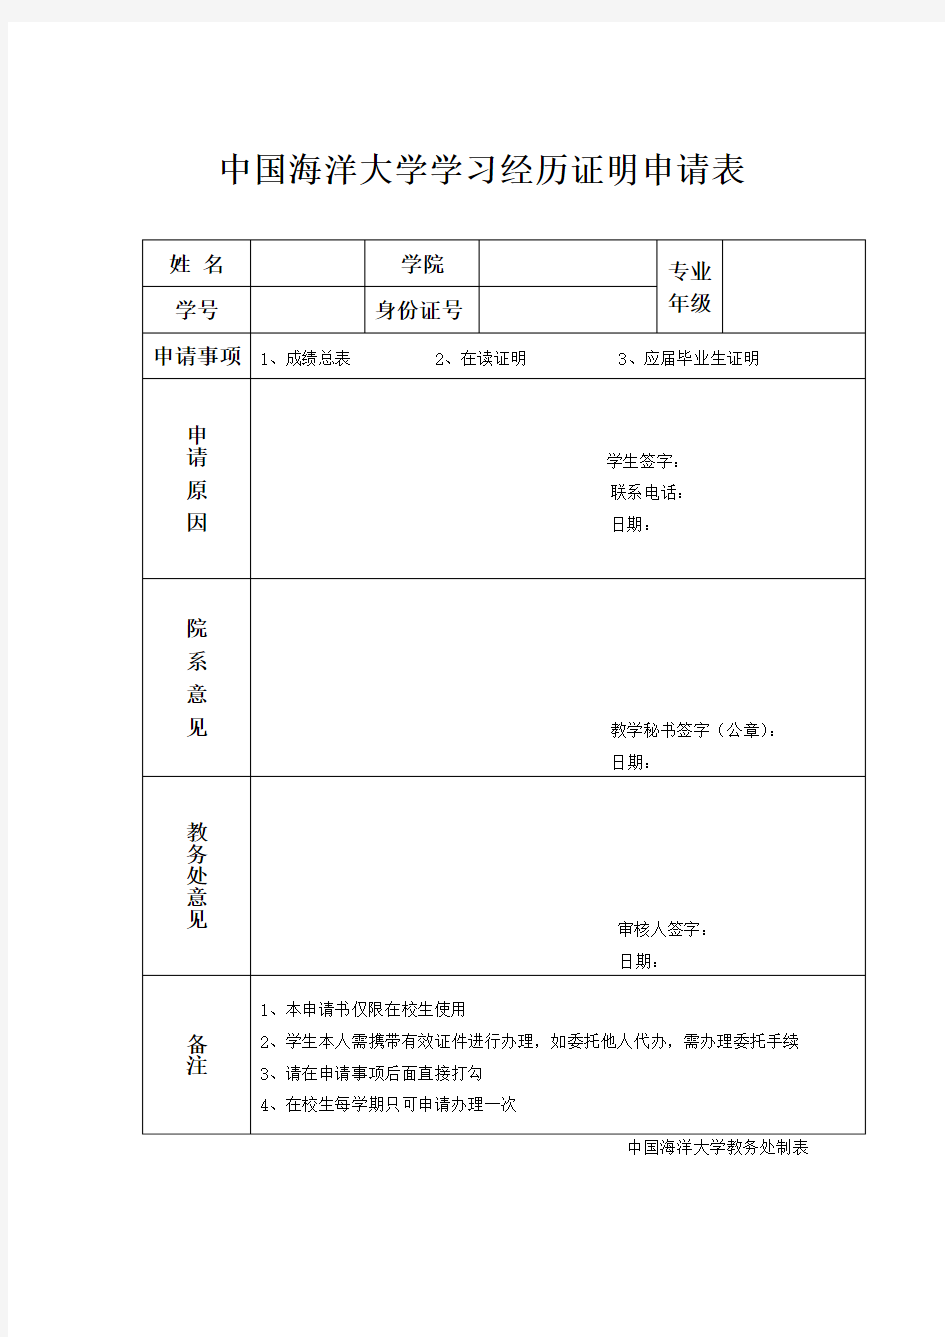 【成绩单申请表】中国海洋大学学习经历证明申请表